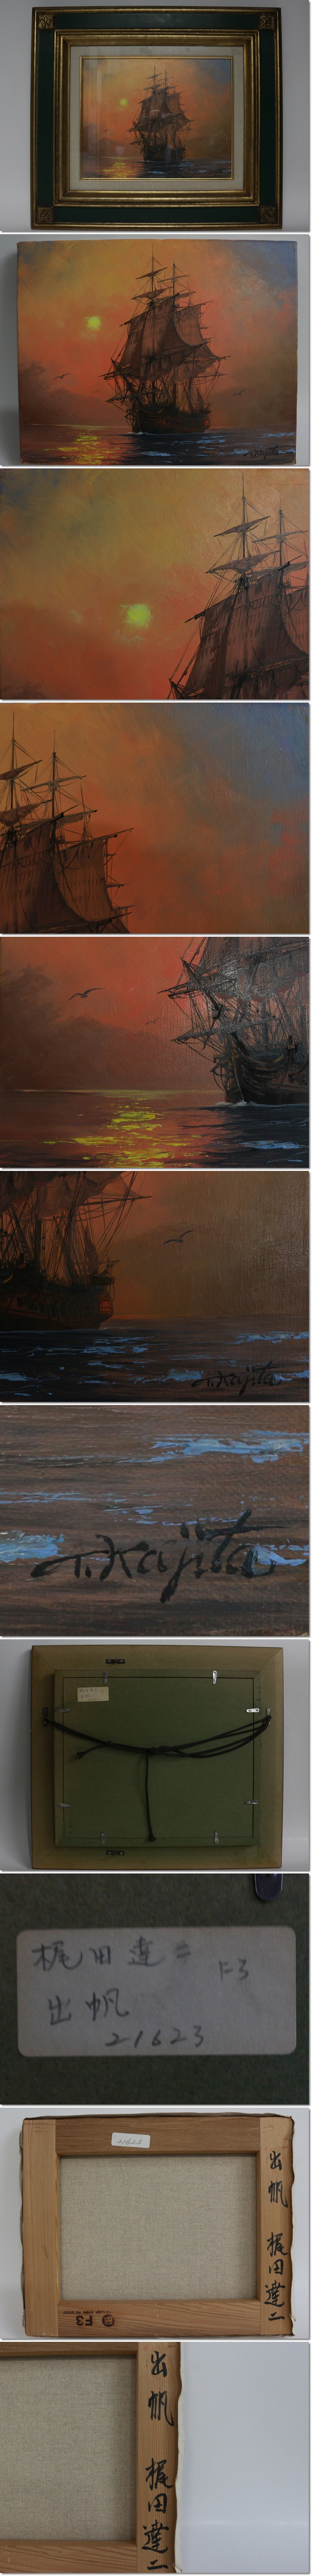 安い特販梶田達二 「出帆」真筆 油彩F3号 風景画 海洋 帆船 額装 E179 自然、風景画